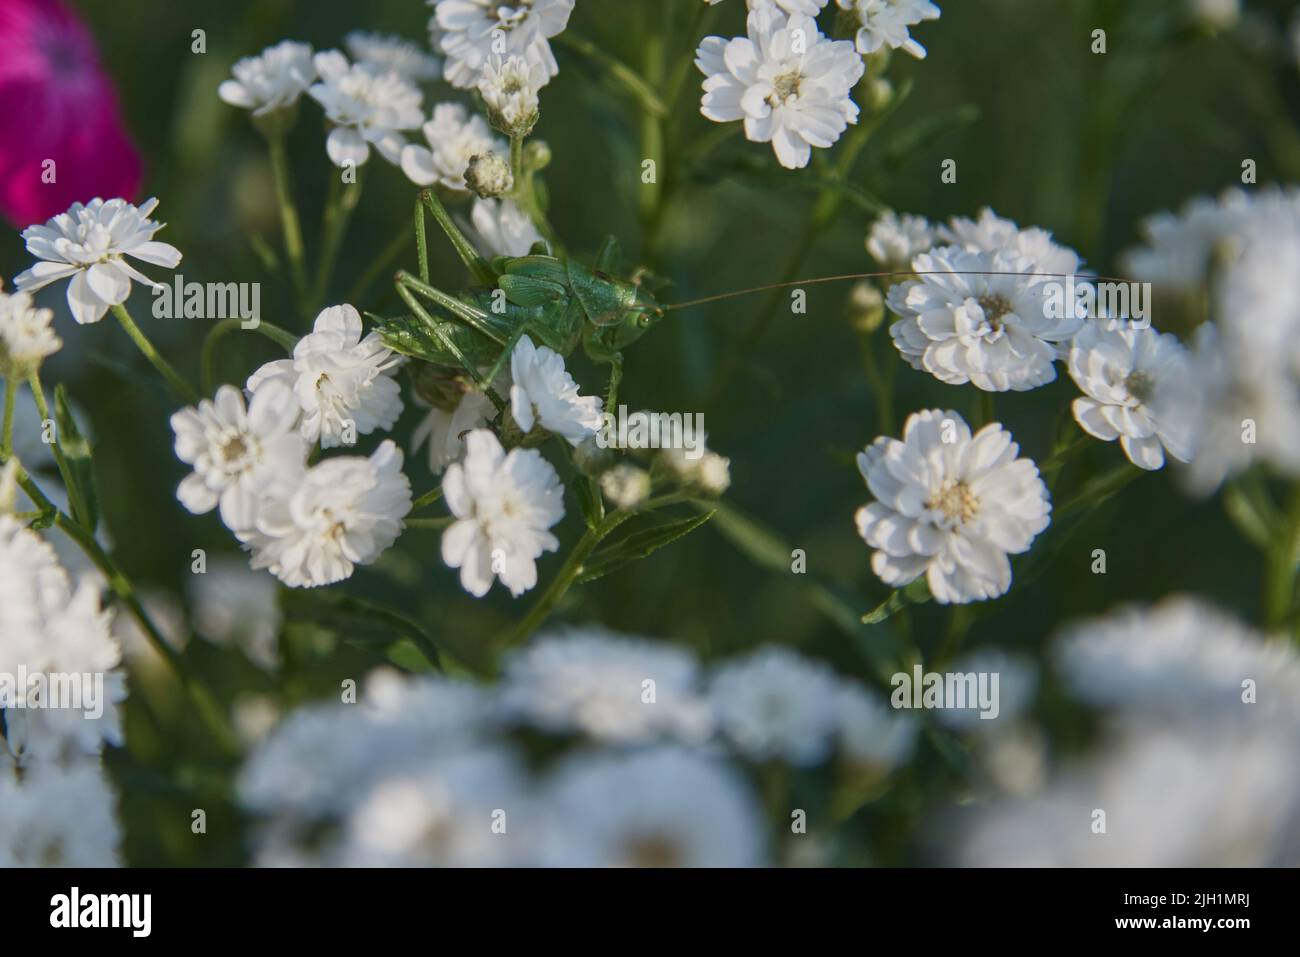 Gitófila de cuadro completo en flor. Las langostas verdes se sientan en las flores blancas. Foto de stock